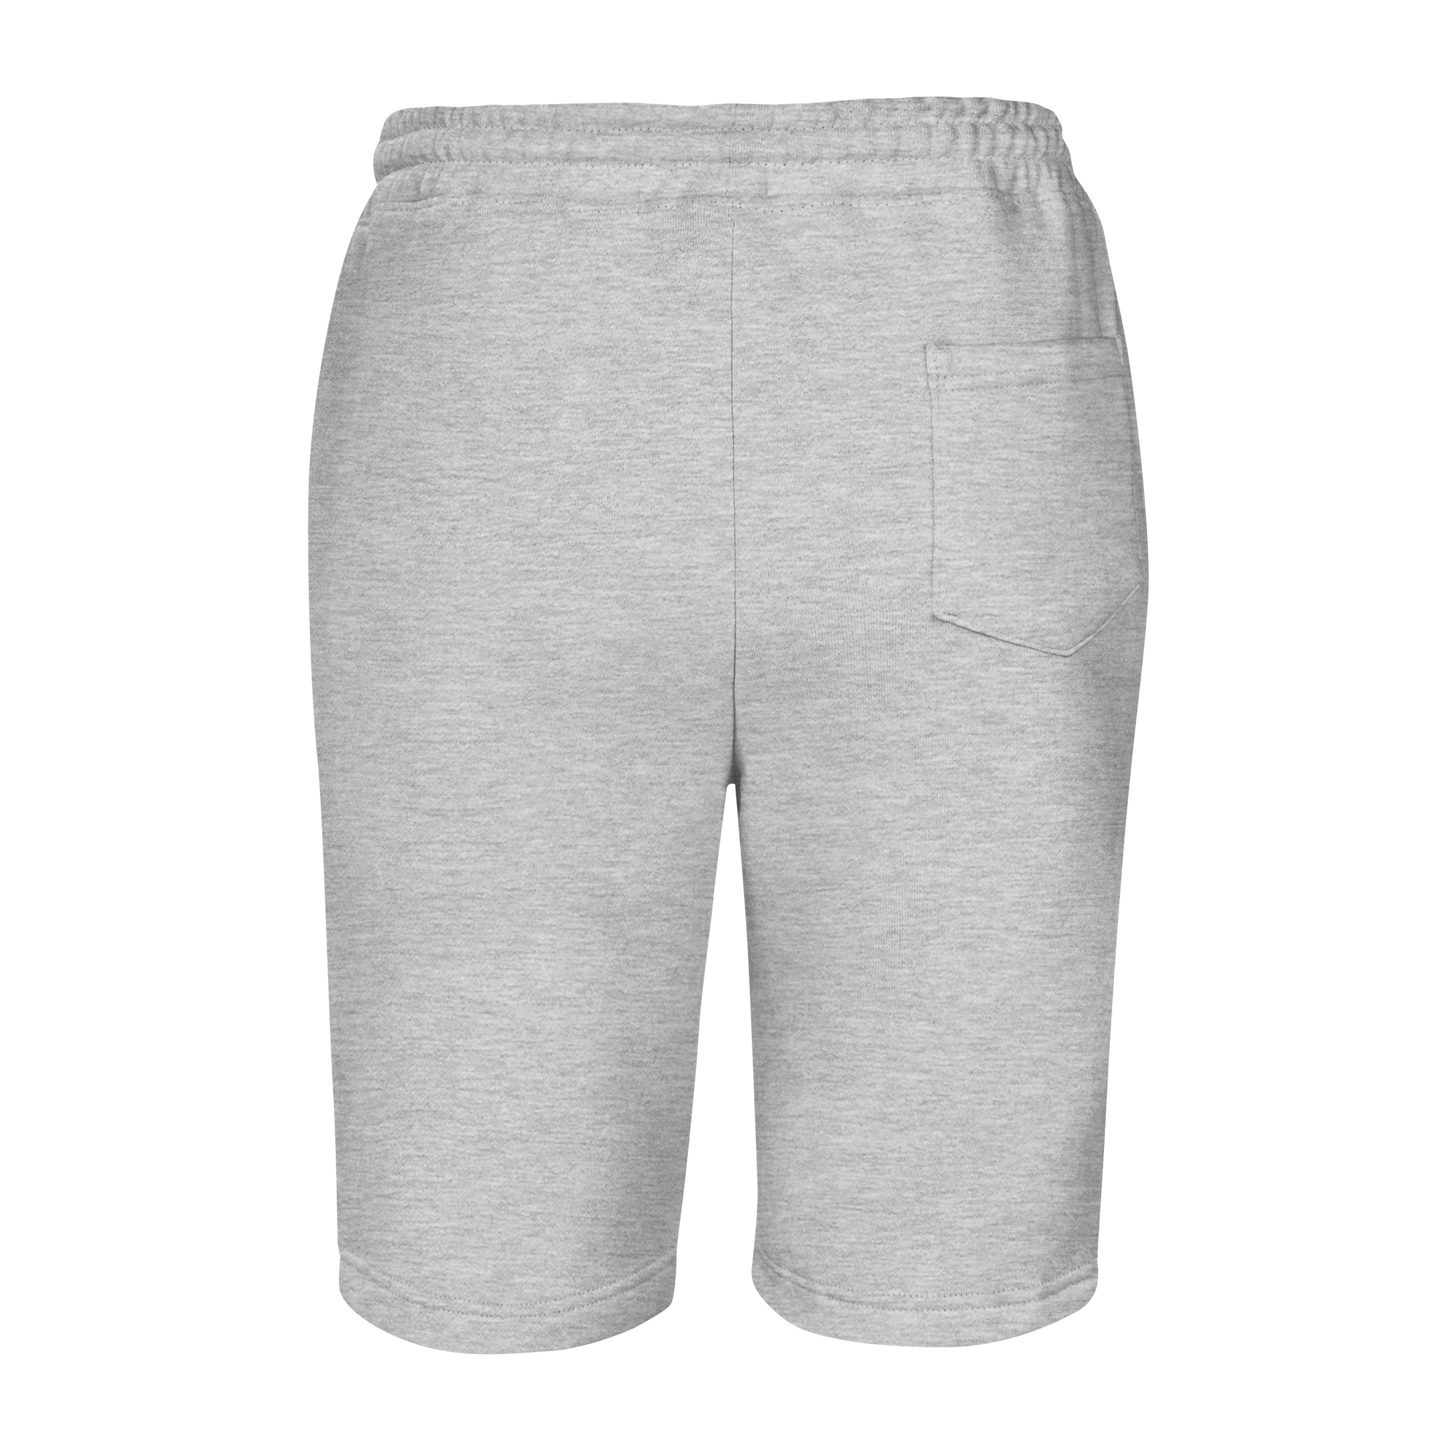 Grey "Hoochie" Men's Shorts OG Logo